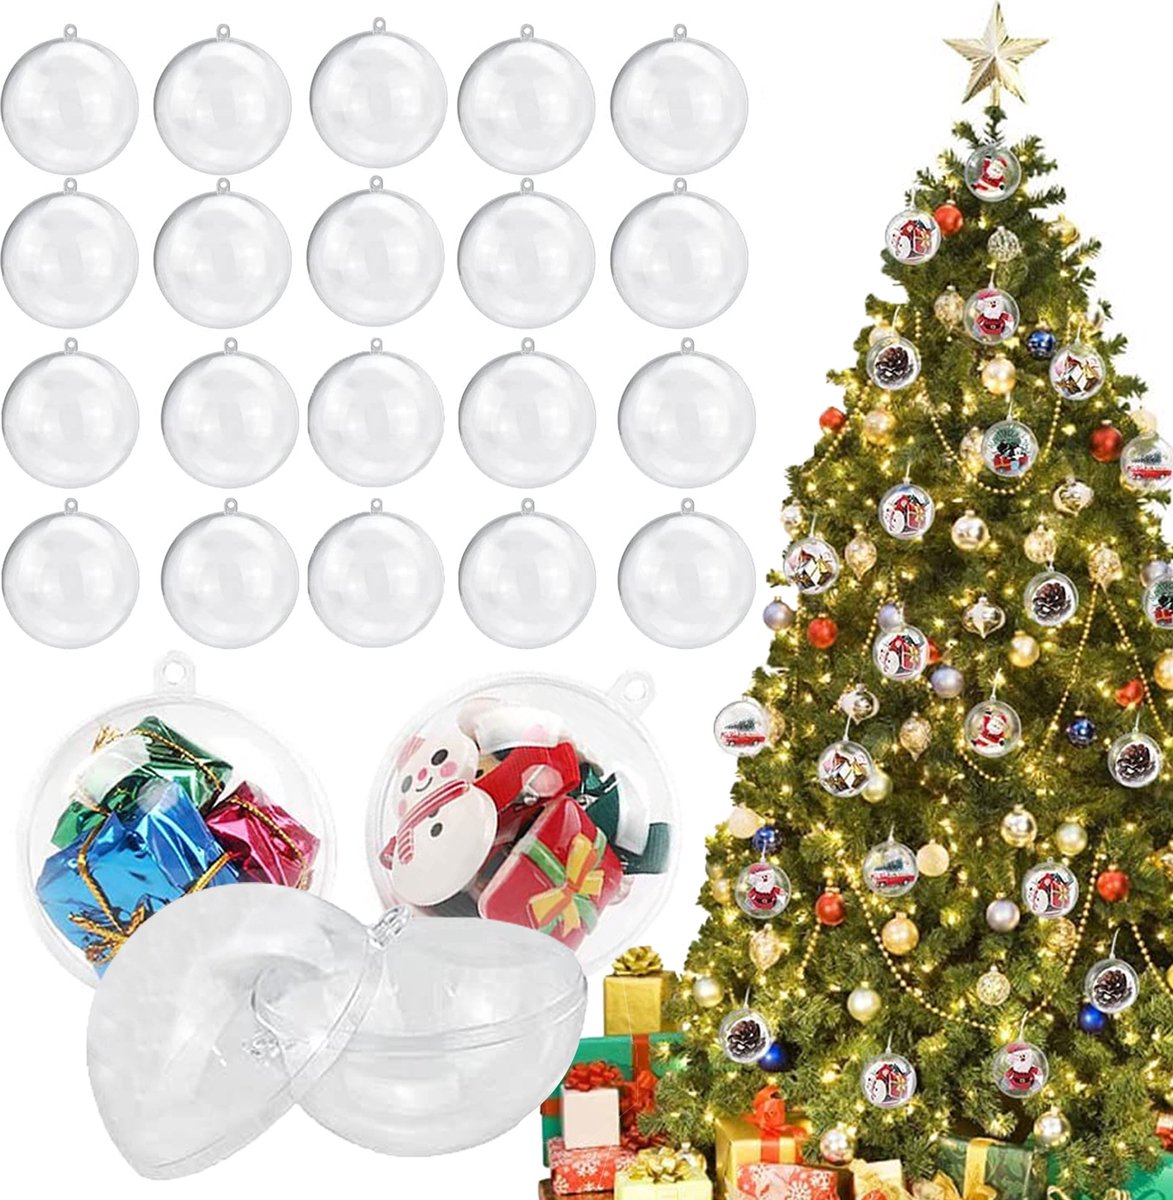 Uten - Kerstballen Plastic - kerstboom versiering - Christmas Gifts - kerstballenset - 20 stuks - kerstboom ballen - Ø10cm - wit